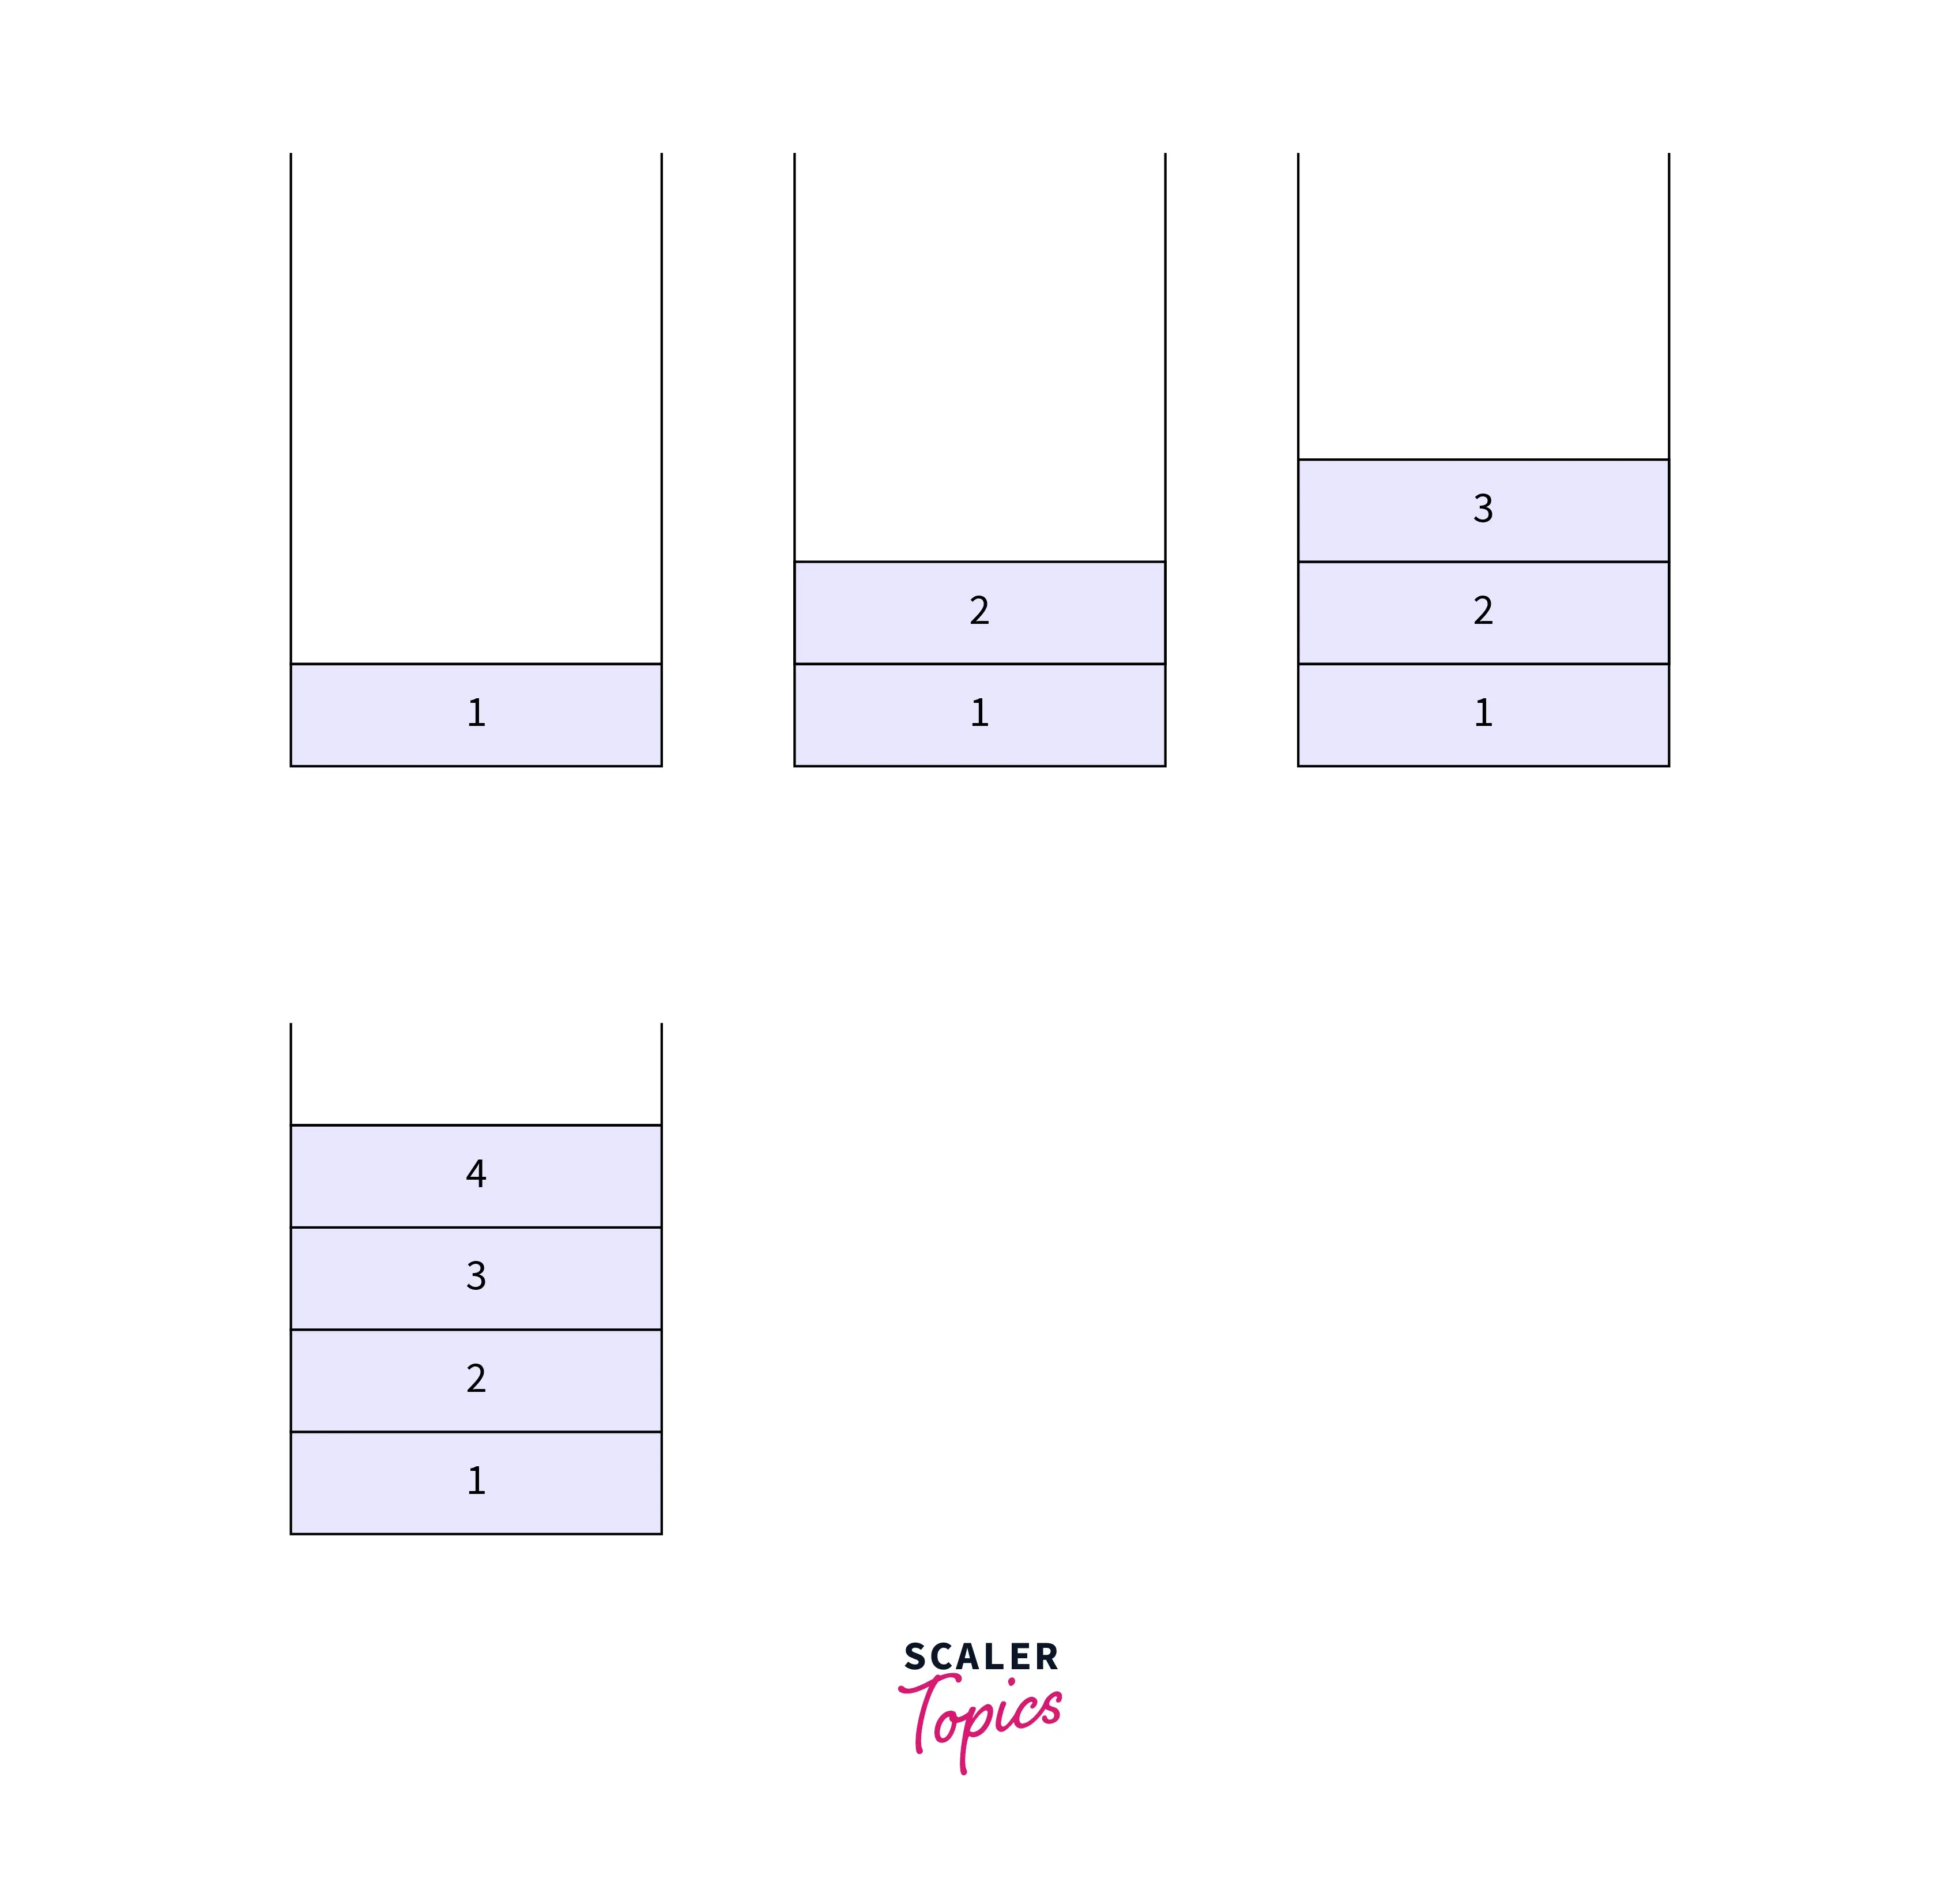 image showing 4 stacks